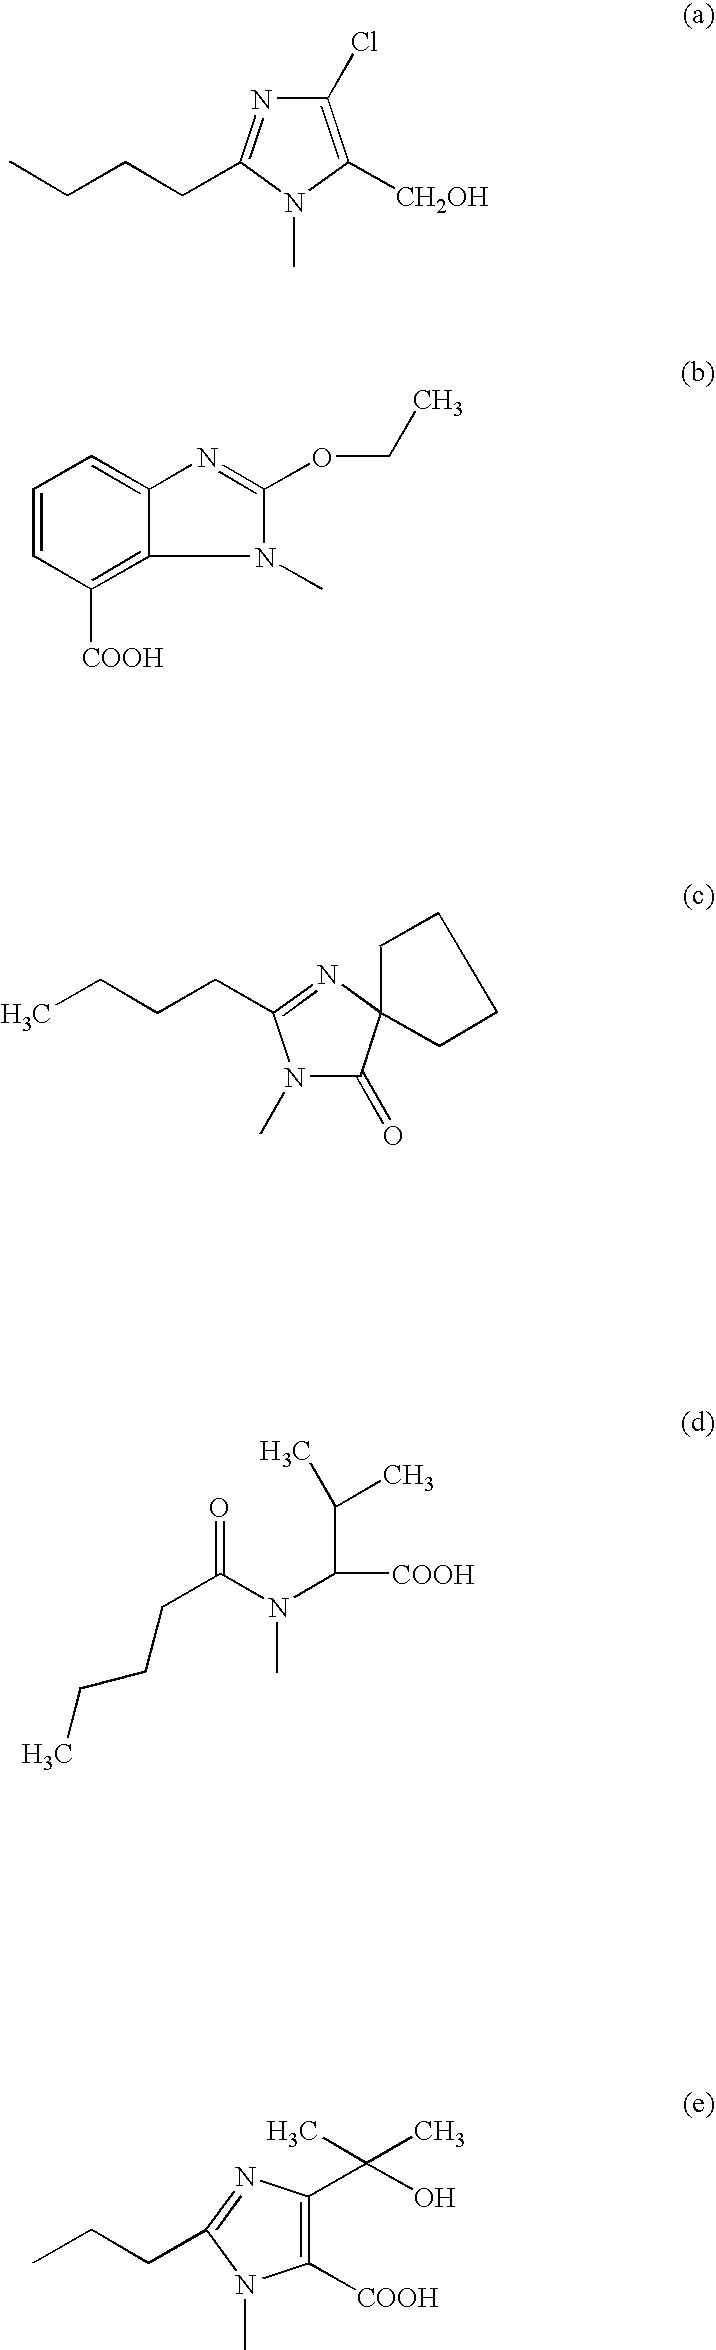 Phenyltetrazole compounds